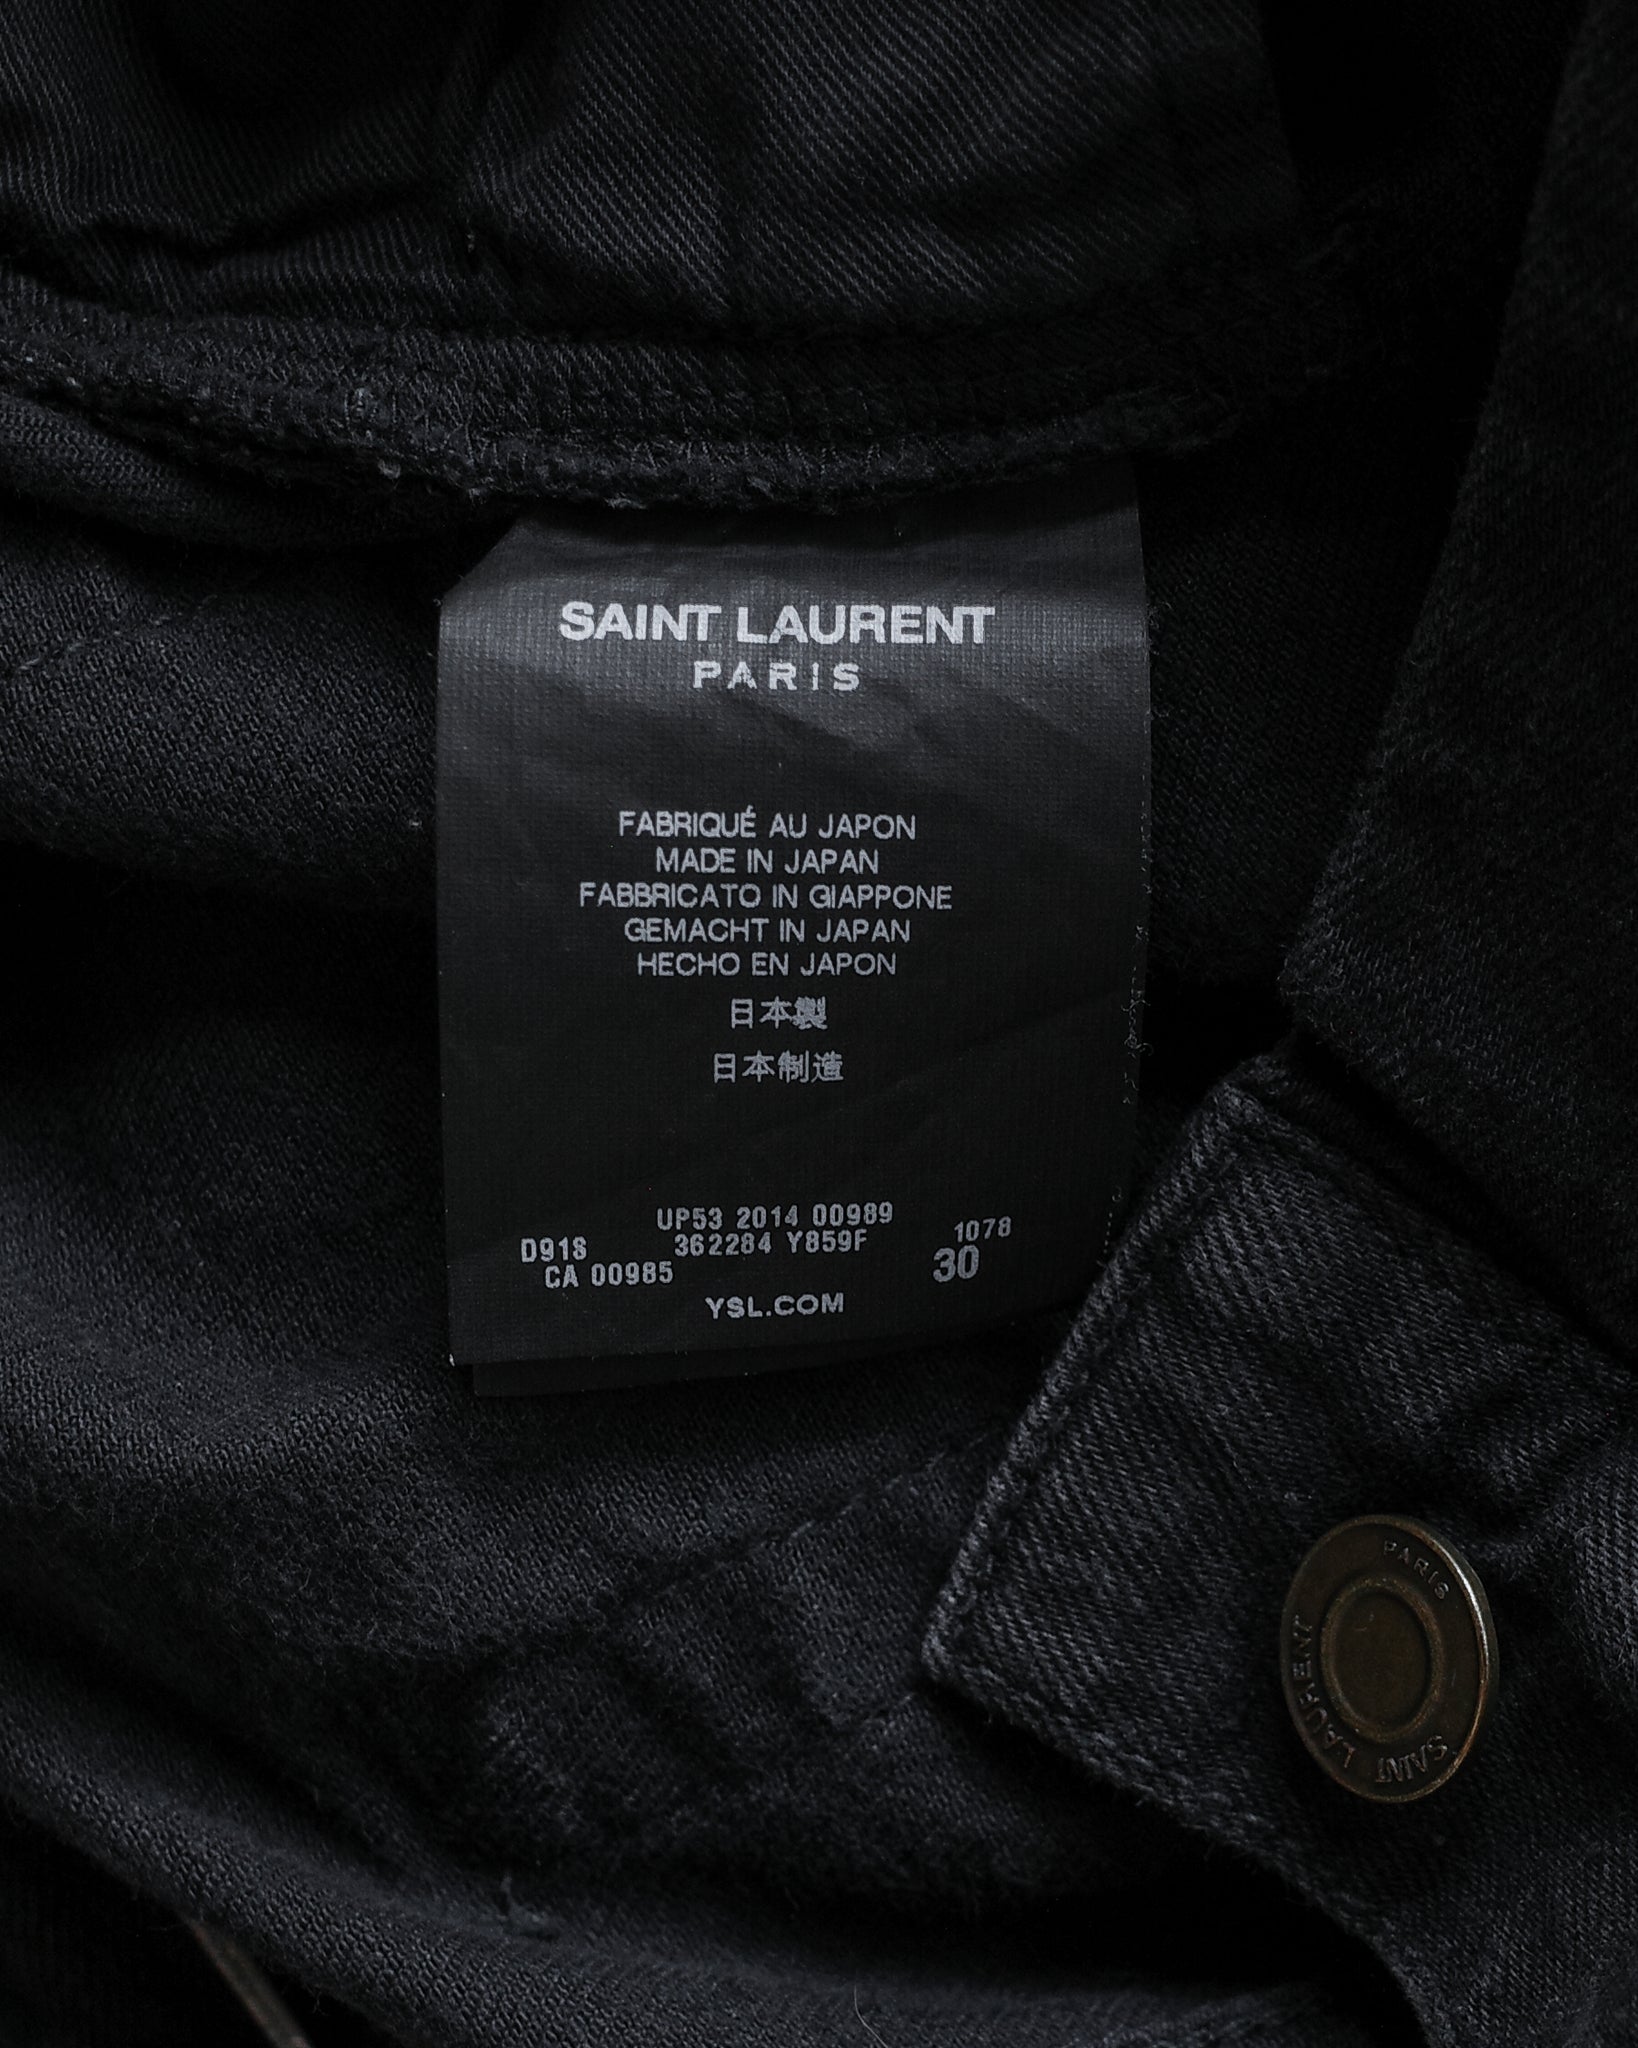 Saint Laurent 2014 D02 Denim